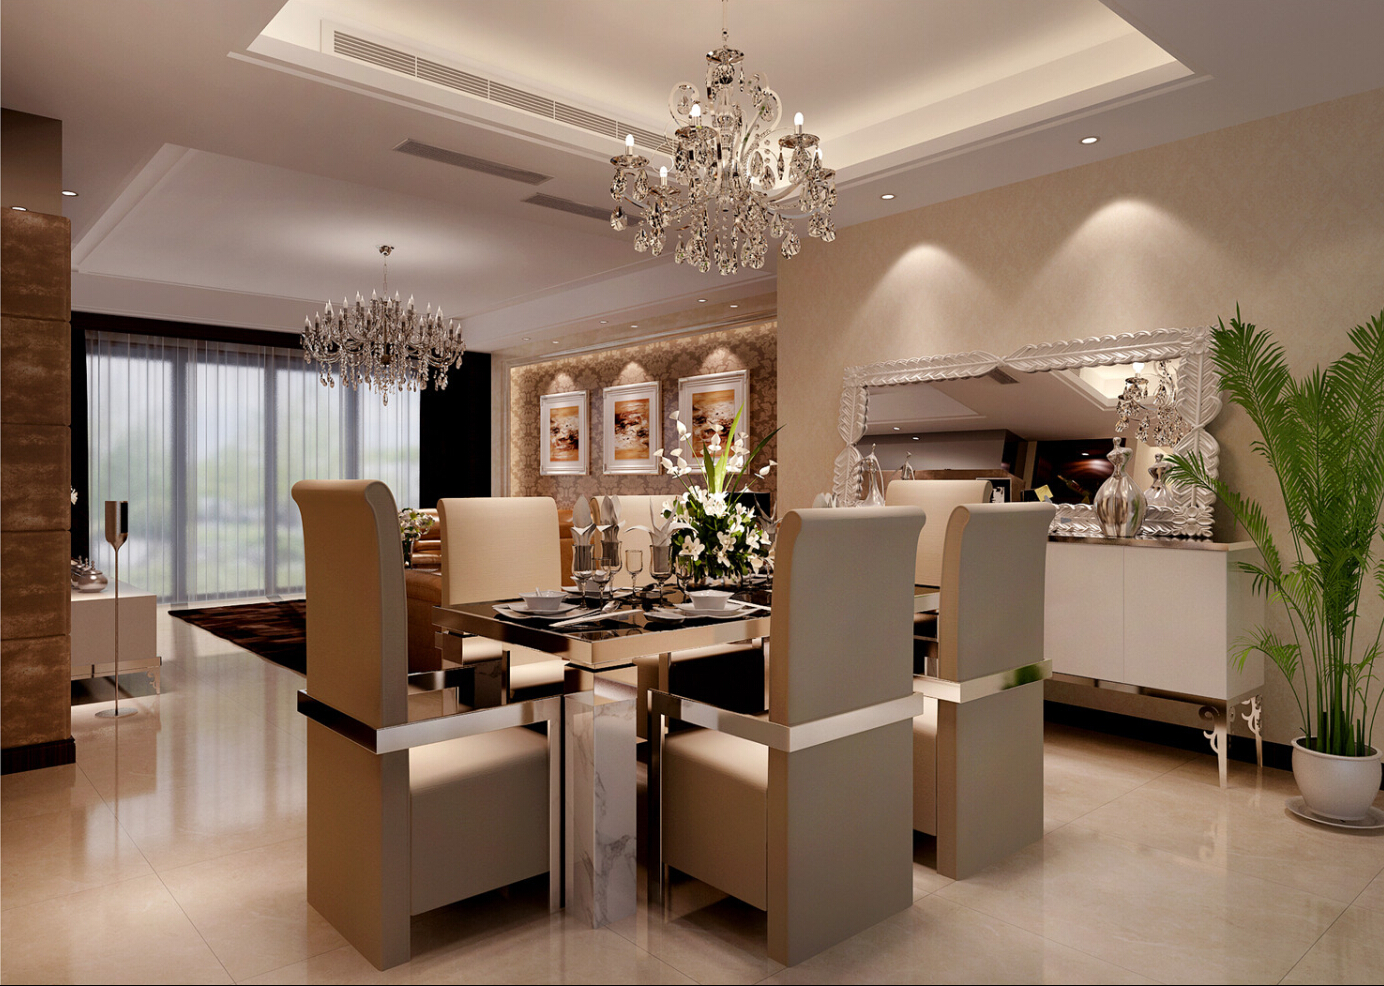 尚海湾 装修设计 现代风格 腾龙设计 林财表作品 餐厅图片来自腾龙设计在尚海湾四房装修现代风格设计的分享